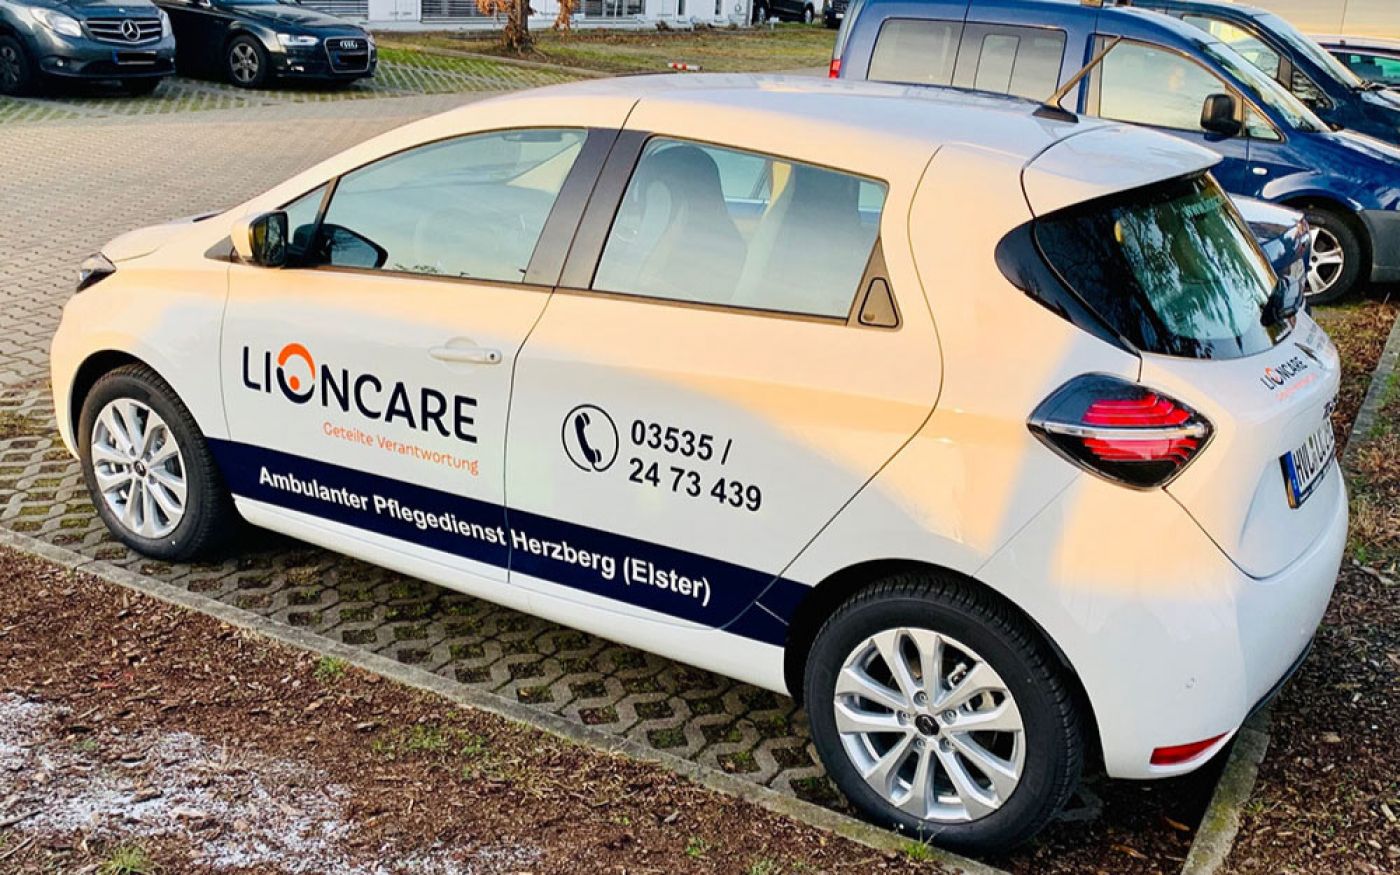 Unsere neuen E-Autos für den ambulanten Pflegedienst in Herzberg (Elster)